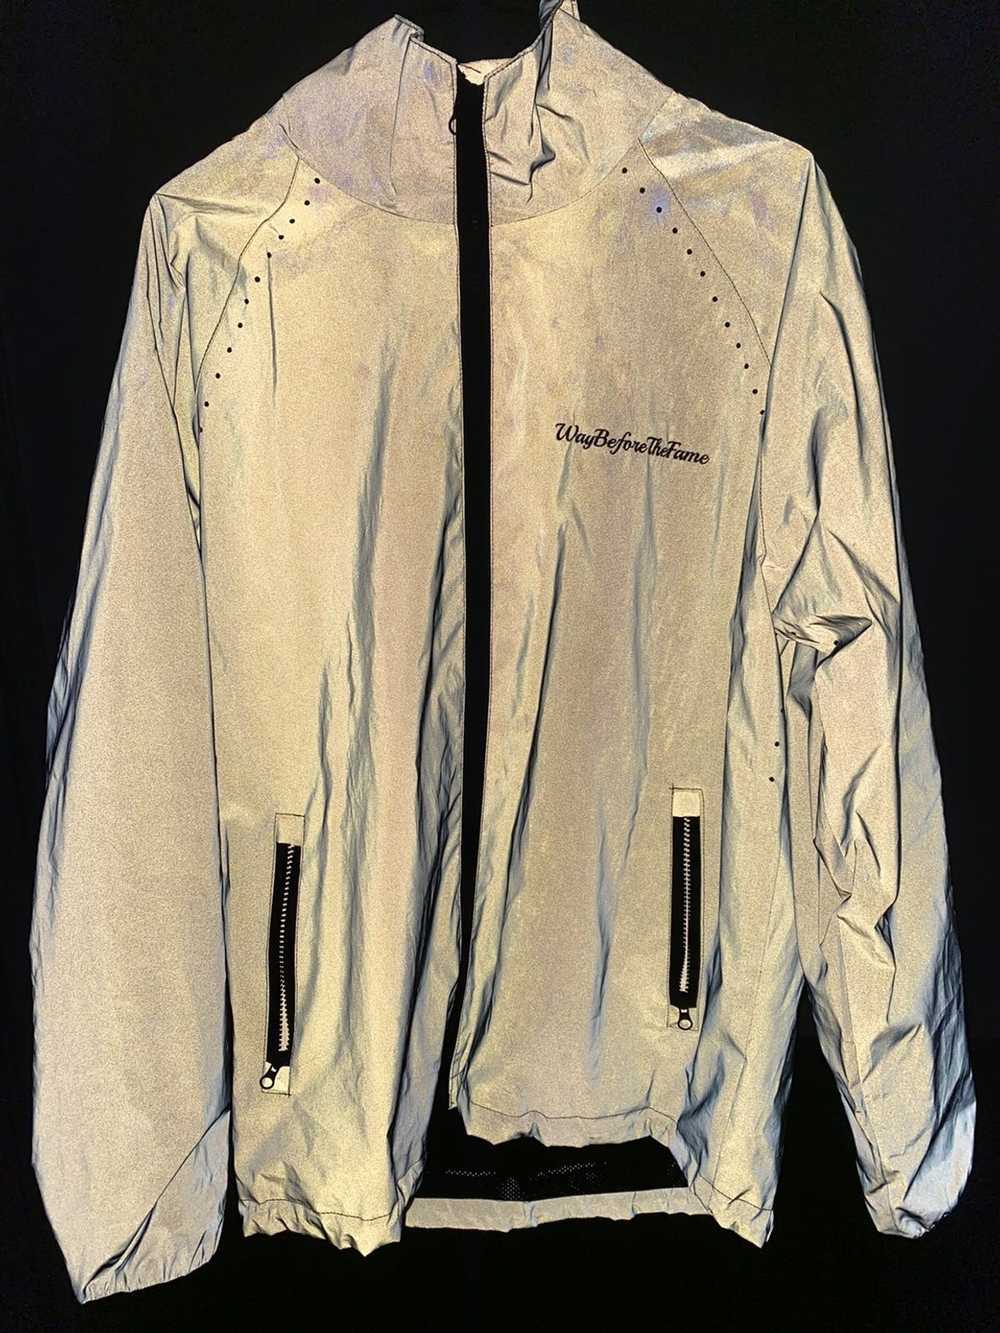 3m Jacket 3M Windbreaker jacket size medium - image 2